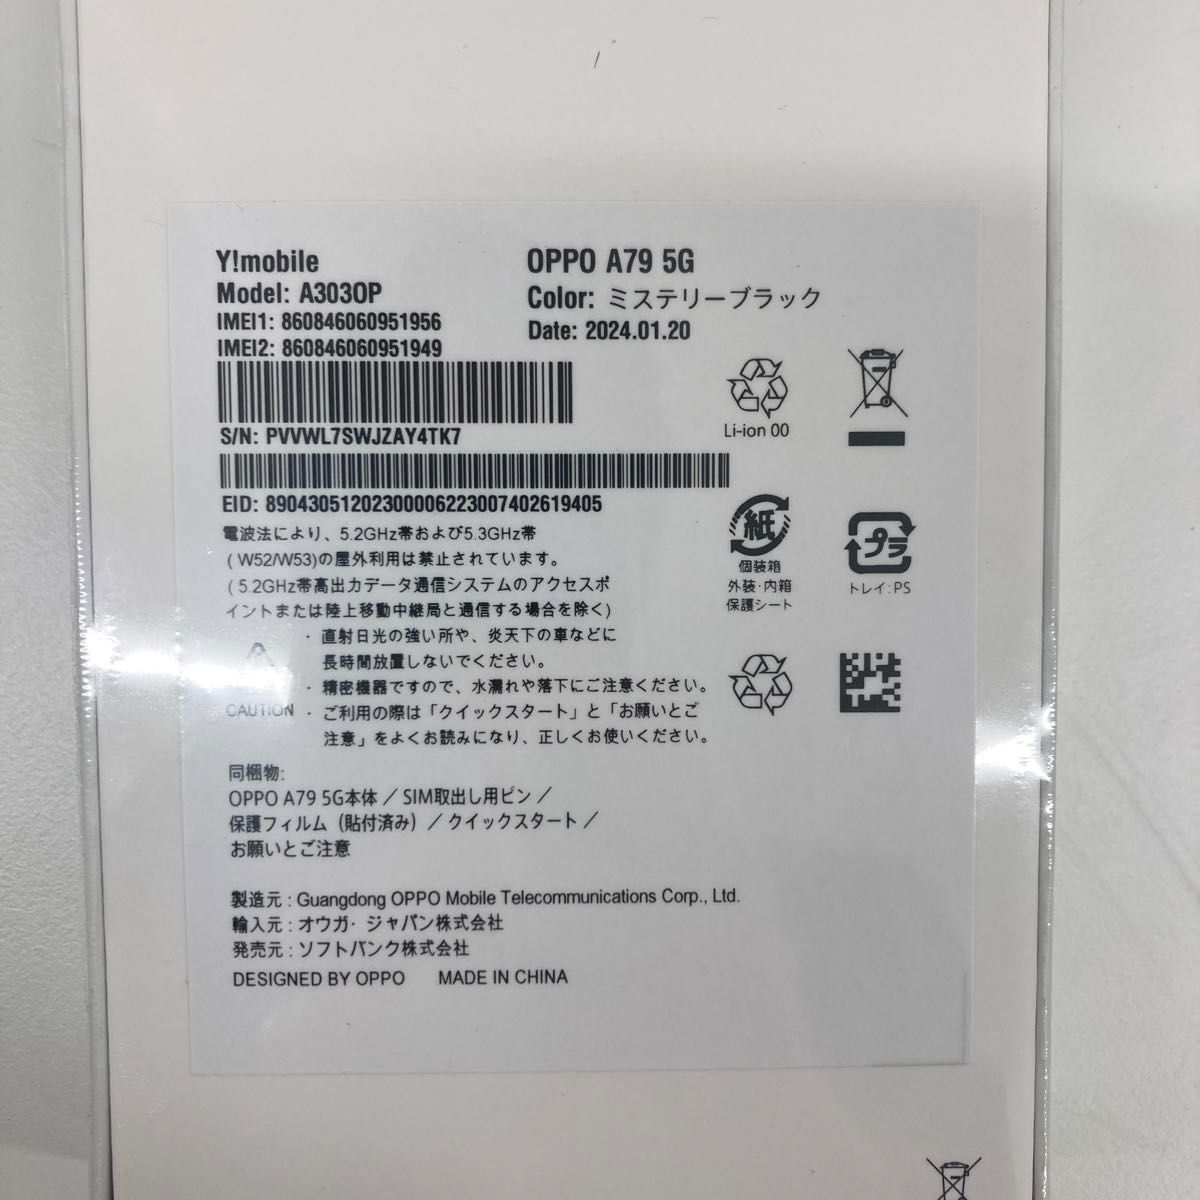 【新品未開封】OPPO オッポ A79 5G Y! mobile版 128GB ミステリーブラック SIMフリー 判定◯